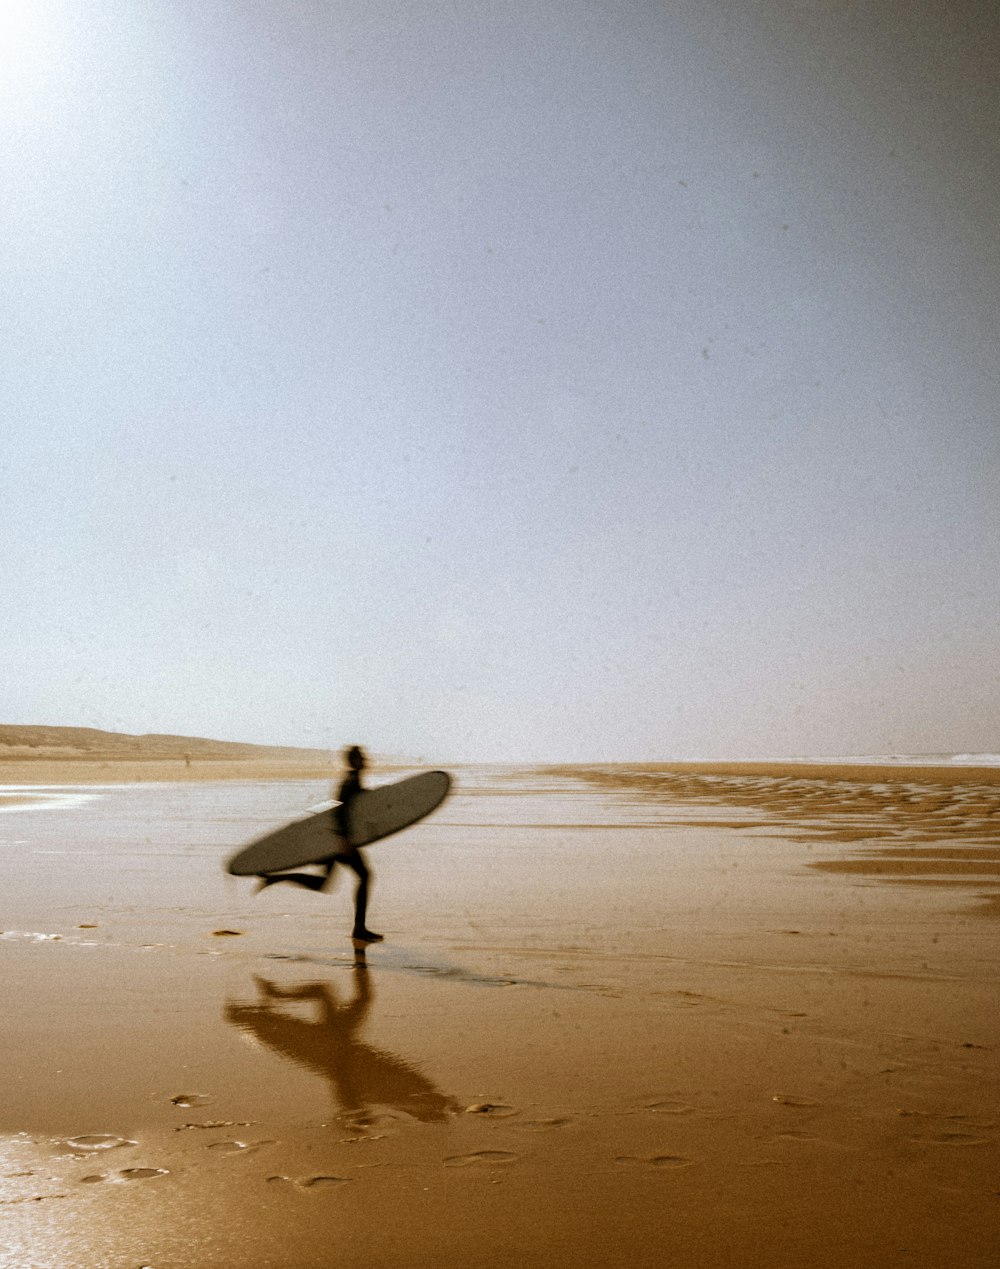 Una persona con una tabla de surf caminando en una playa